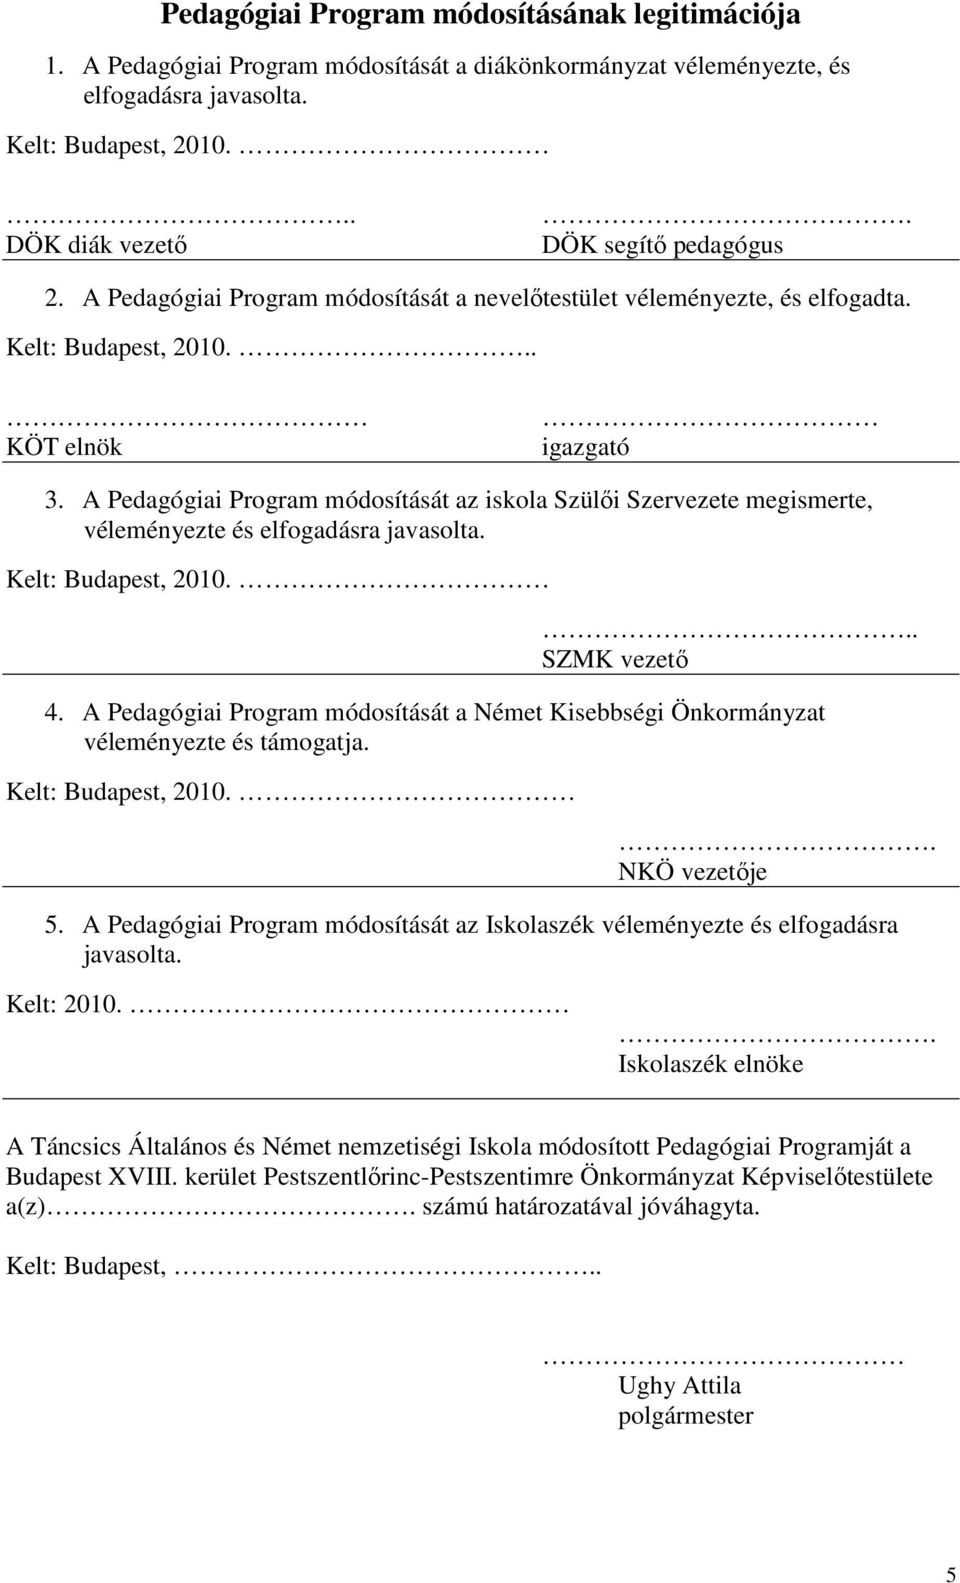 A Pedagógiai Program módosítását az iskola Szülői Szervezete megismerte, véleményezte és elfogadásra javasolta. Kelt: Budapest, 2010... SZMK vezető 4.